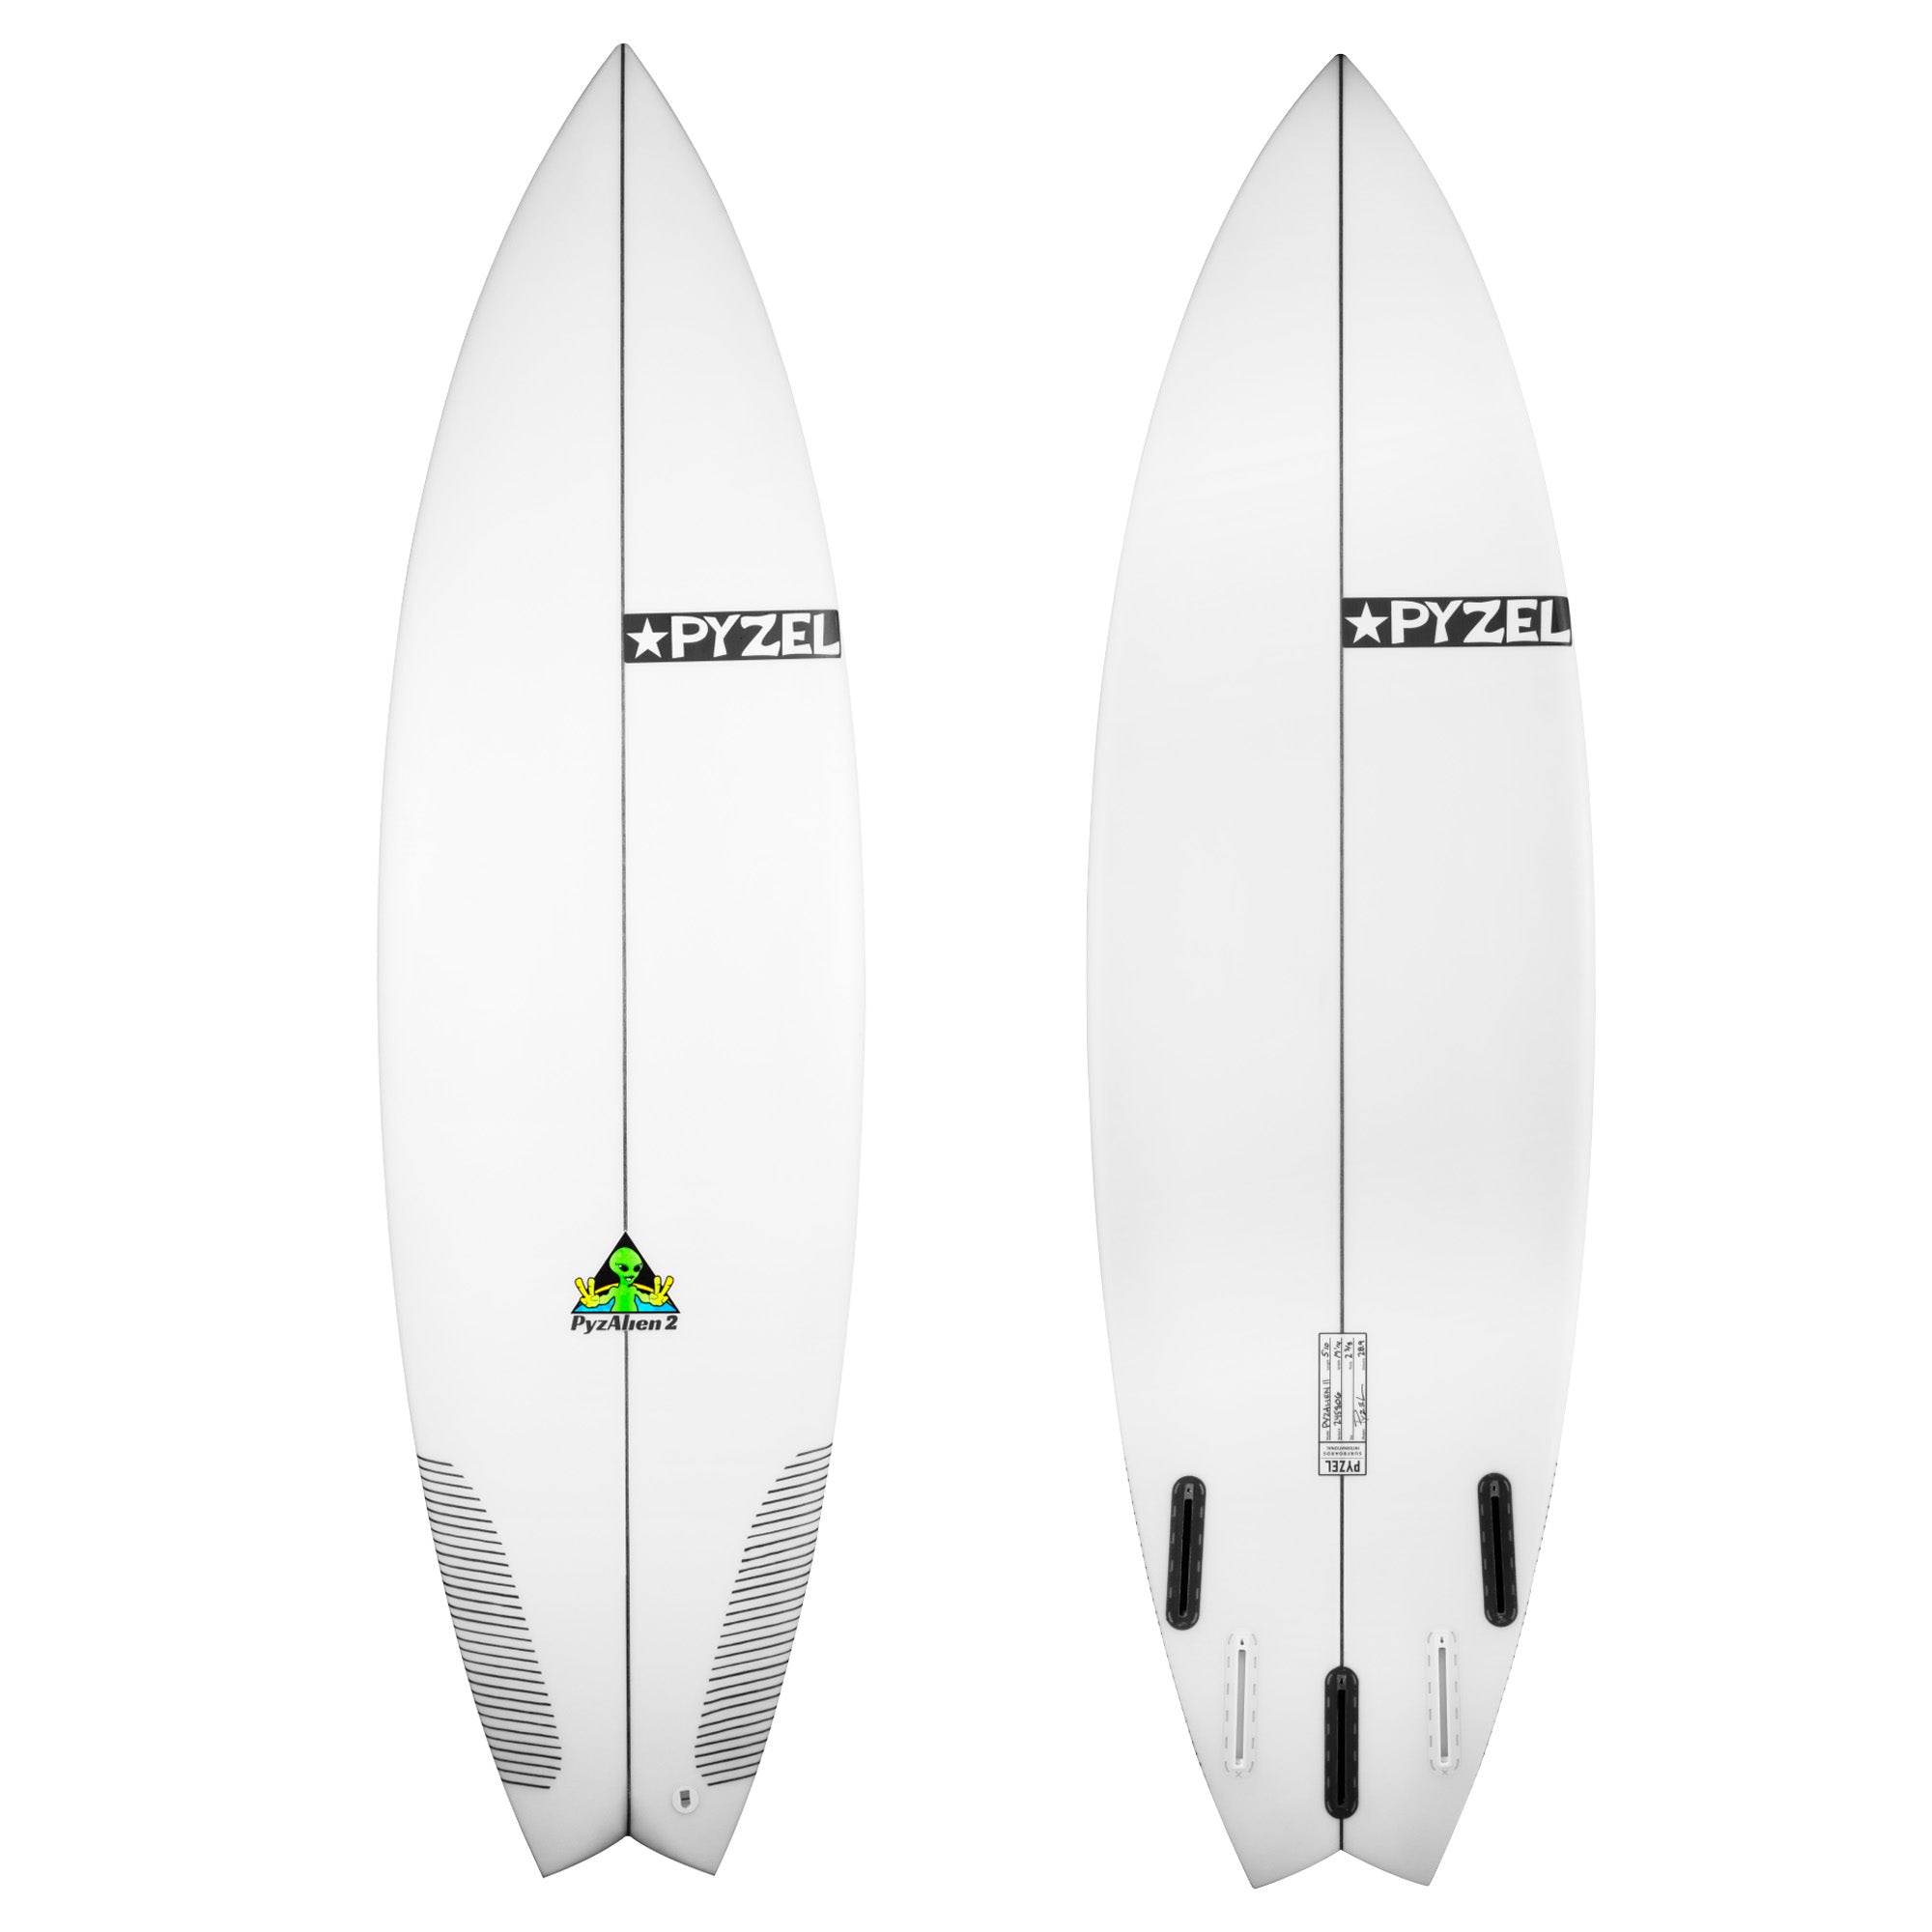 Pyzel Pyzalien 2 Surfboard